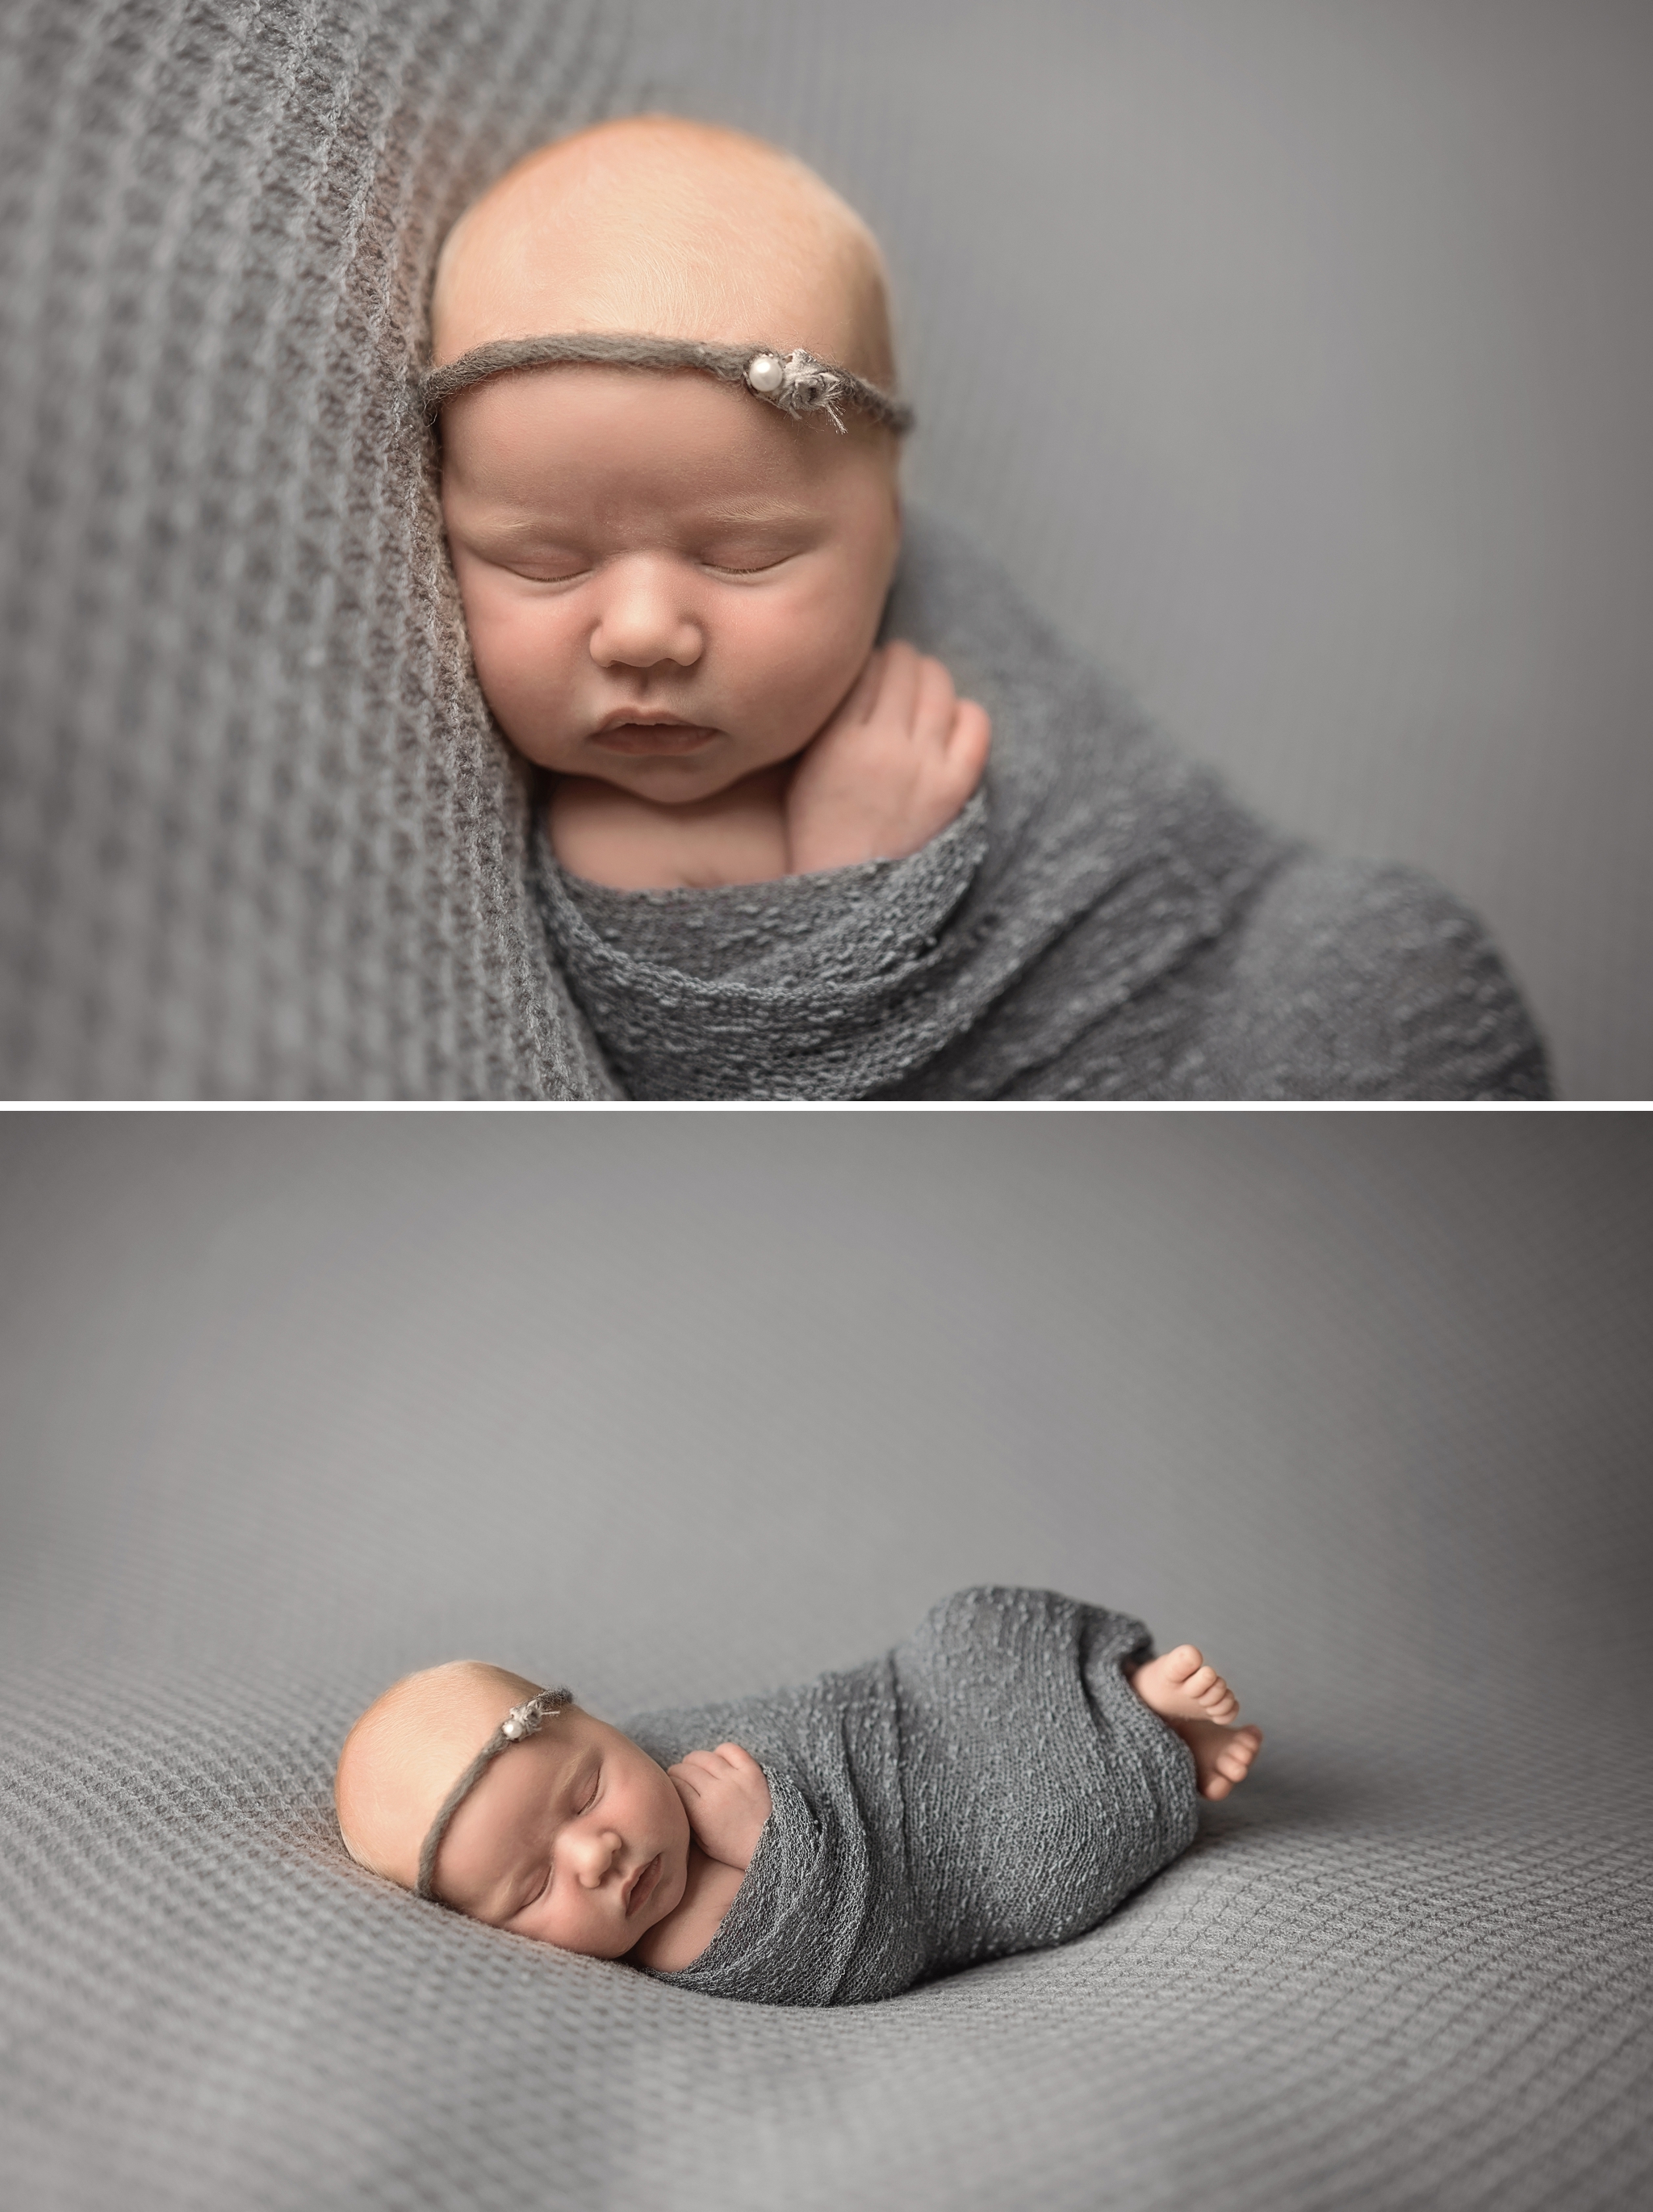 ottawa newborn photographer, ottawa baby photography, newborn photography ottawa, best newborn photos, best baby photos, baby whisperer